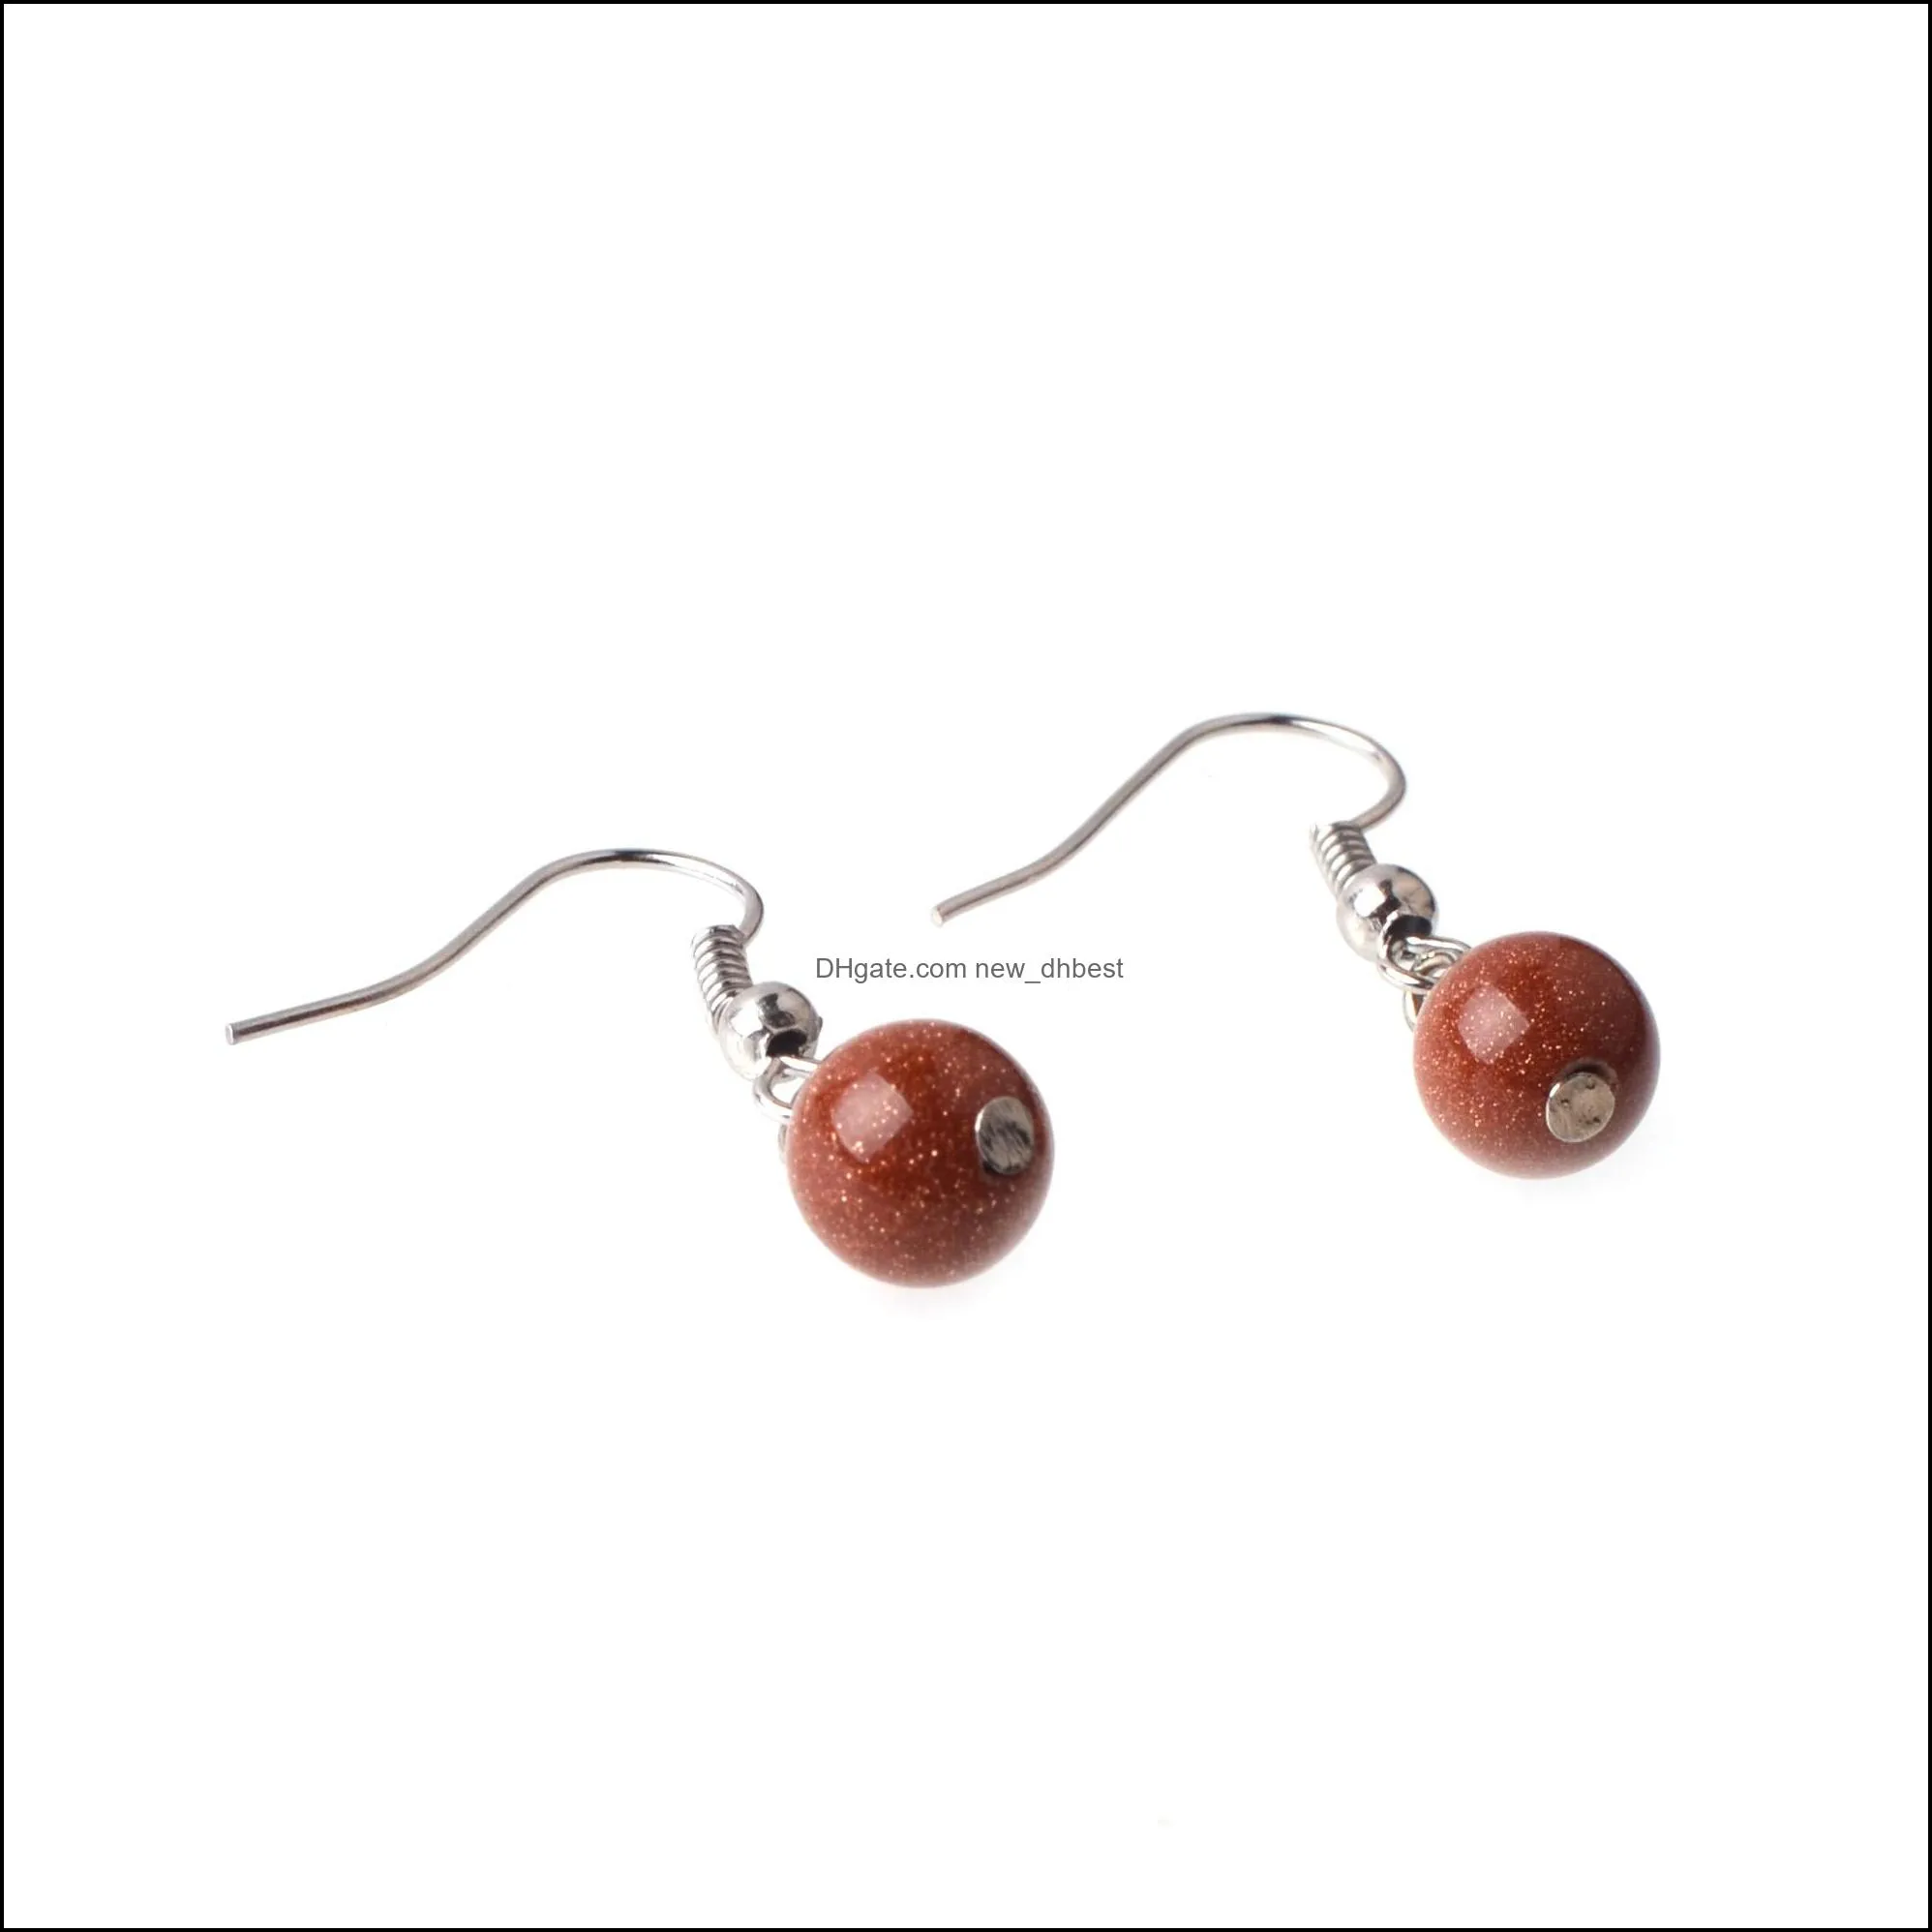 bead earrings stone pendant female fashion charm hook pierced ear drops accessories